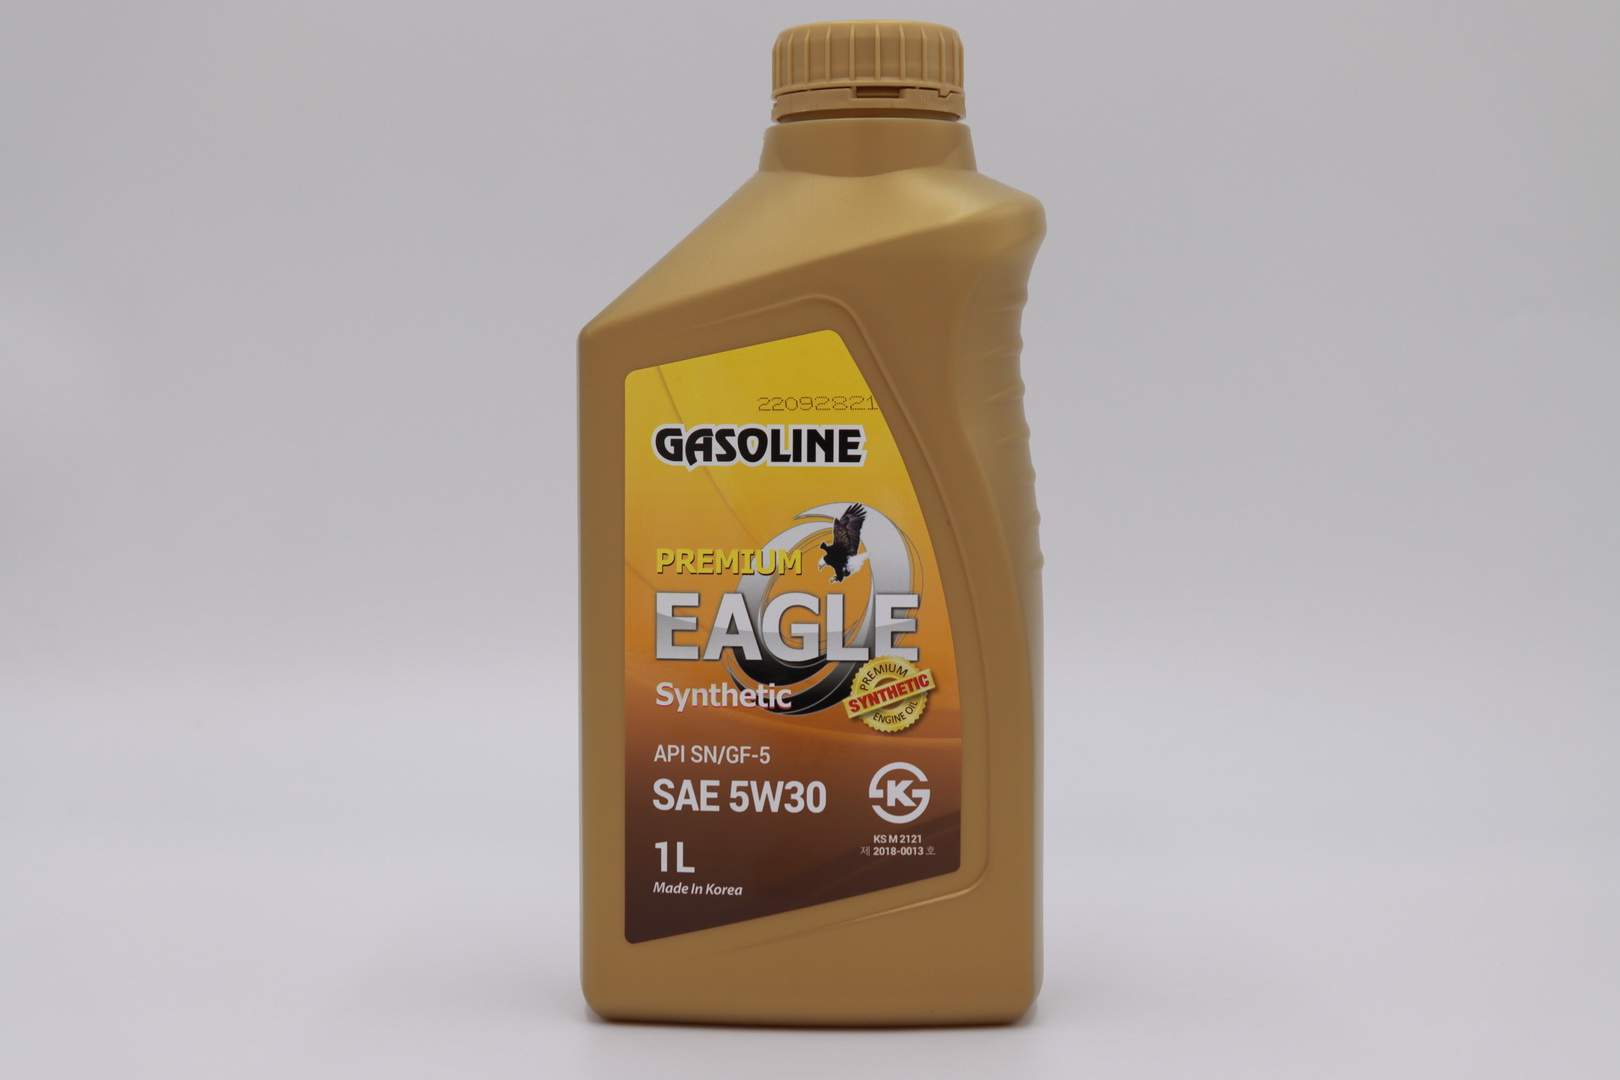 Моторное масло Eagle PREMIUM Gasoline 5W30 1л - отзывы покупателей на Мегамаркет | 600014142564